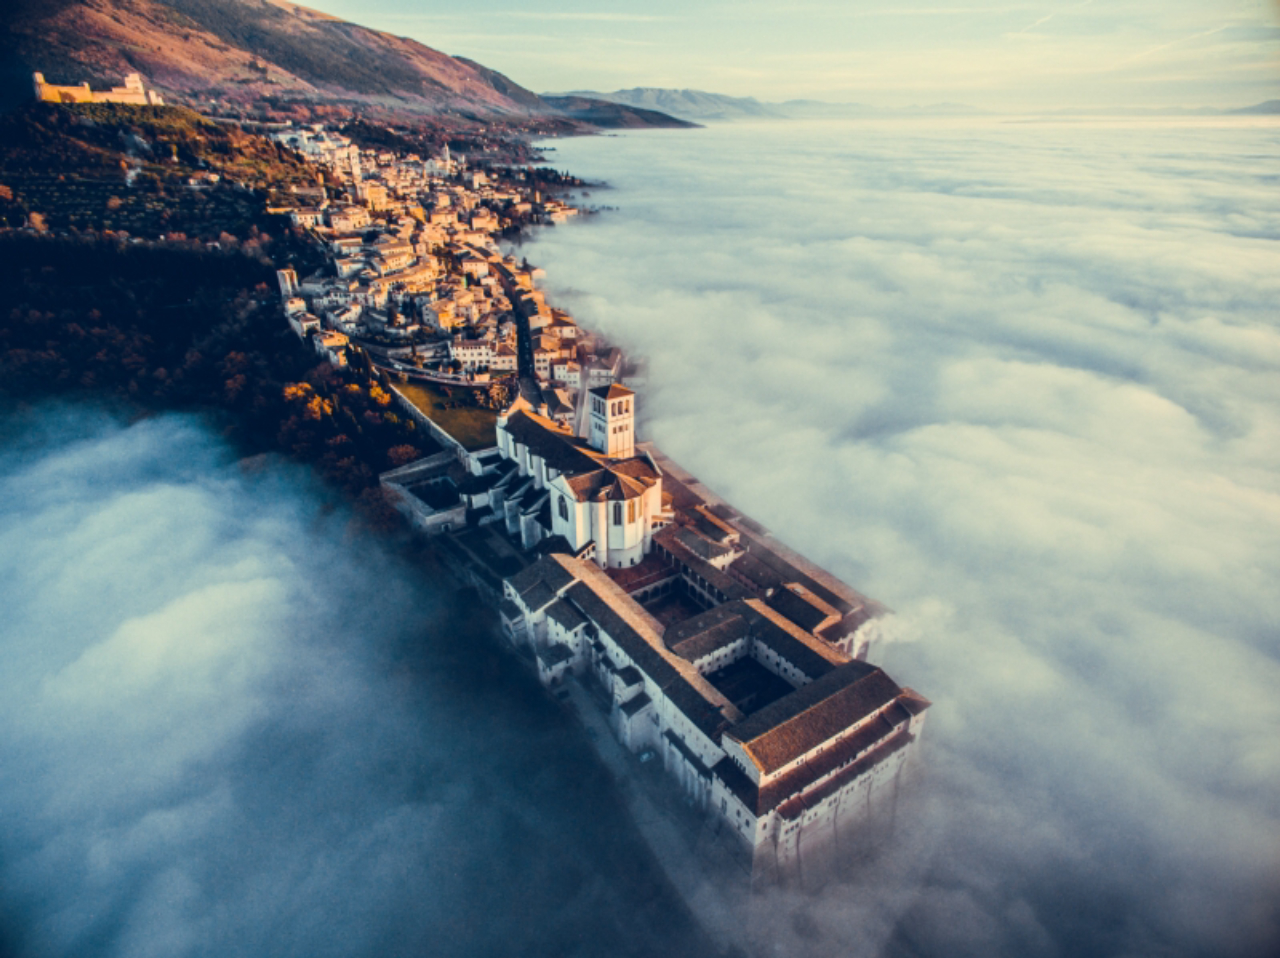 Assisi Over the Clouds, por Francesco Cattuto, vencedor da categoria Urbana